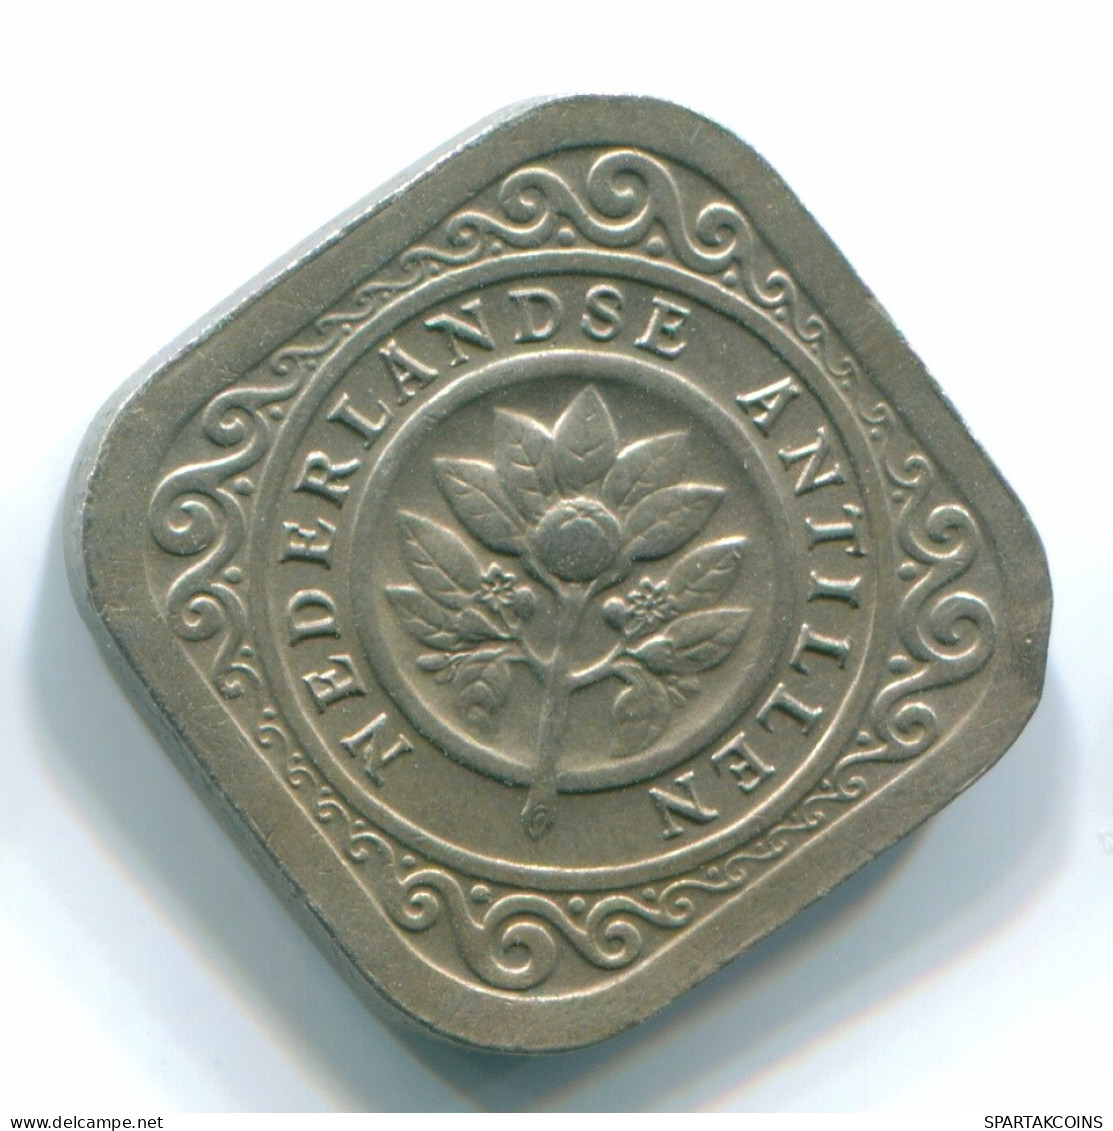 5 CENTS 1967 NIEDERLÄNDISCHE ANTILLEN Nickel Koloniale Münze #S12481.D.A - Antille Olandesi